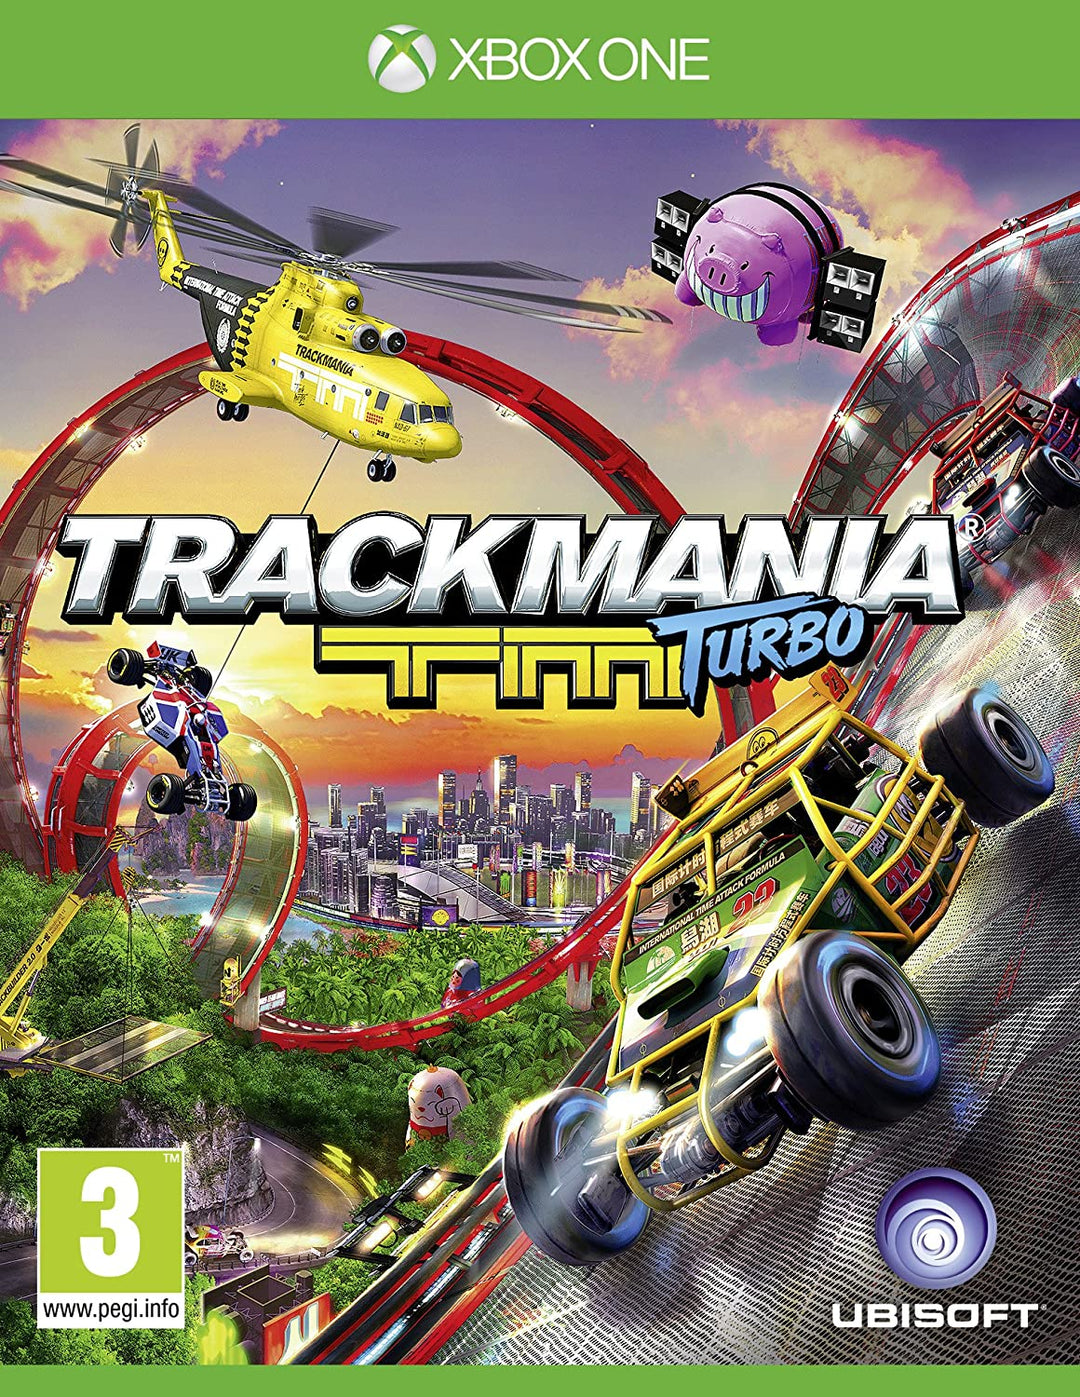 Trackmania-Turbo (Xbox One)